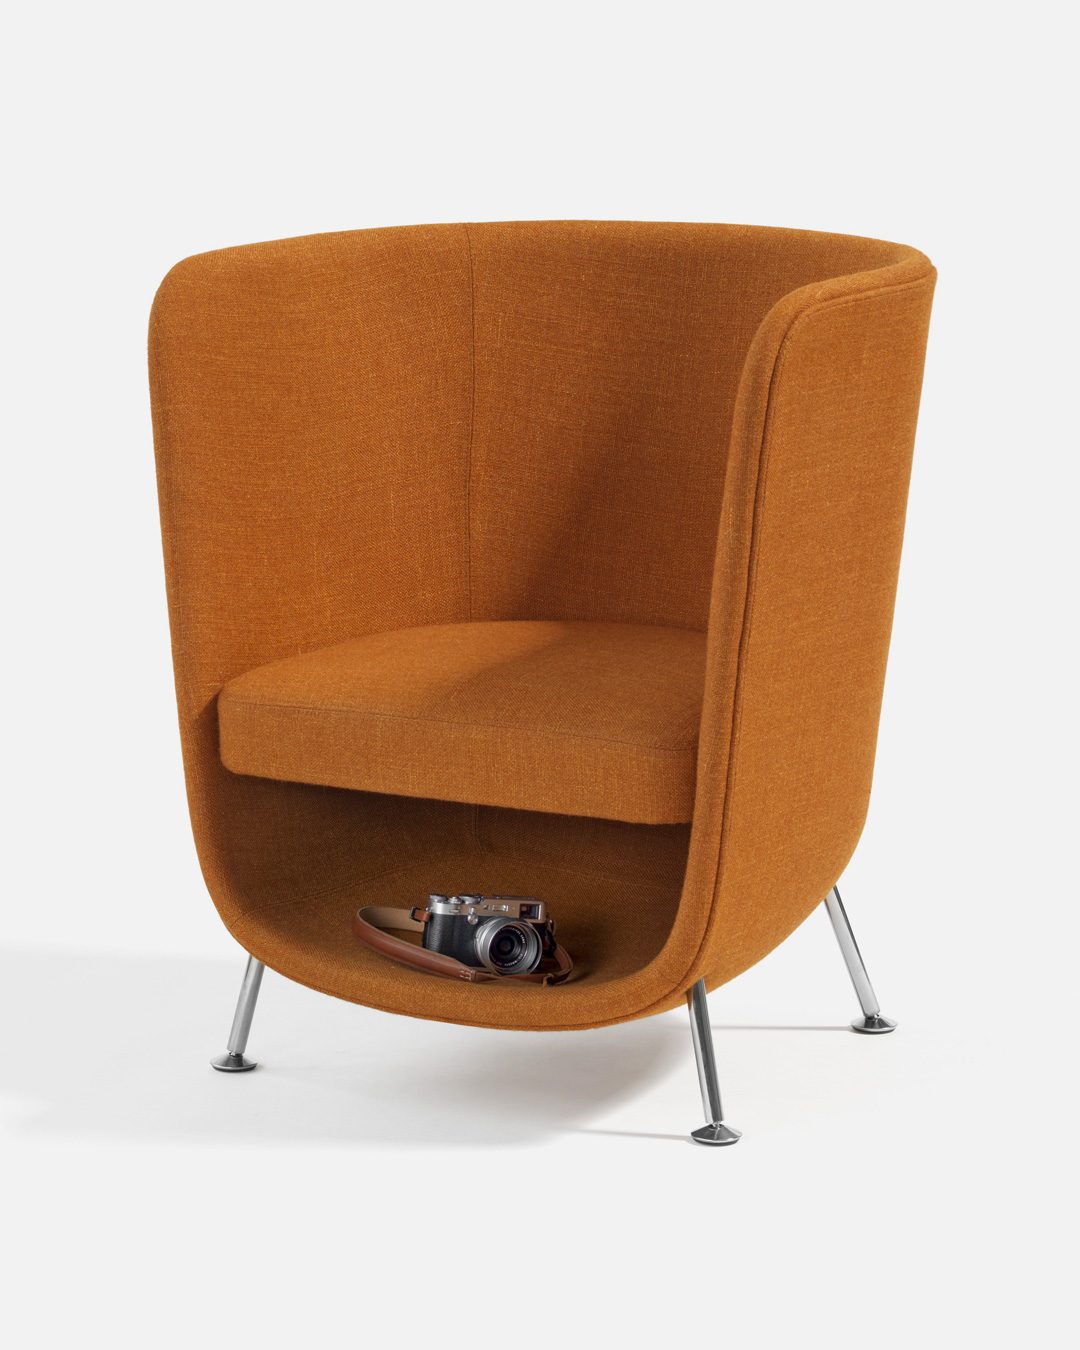 Sillon de diseño Pocket Chair con espacio debajo del asiento para que el gato y humano puedan hacer cocooning juntos